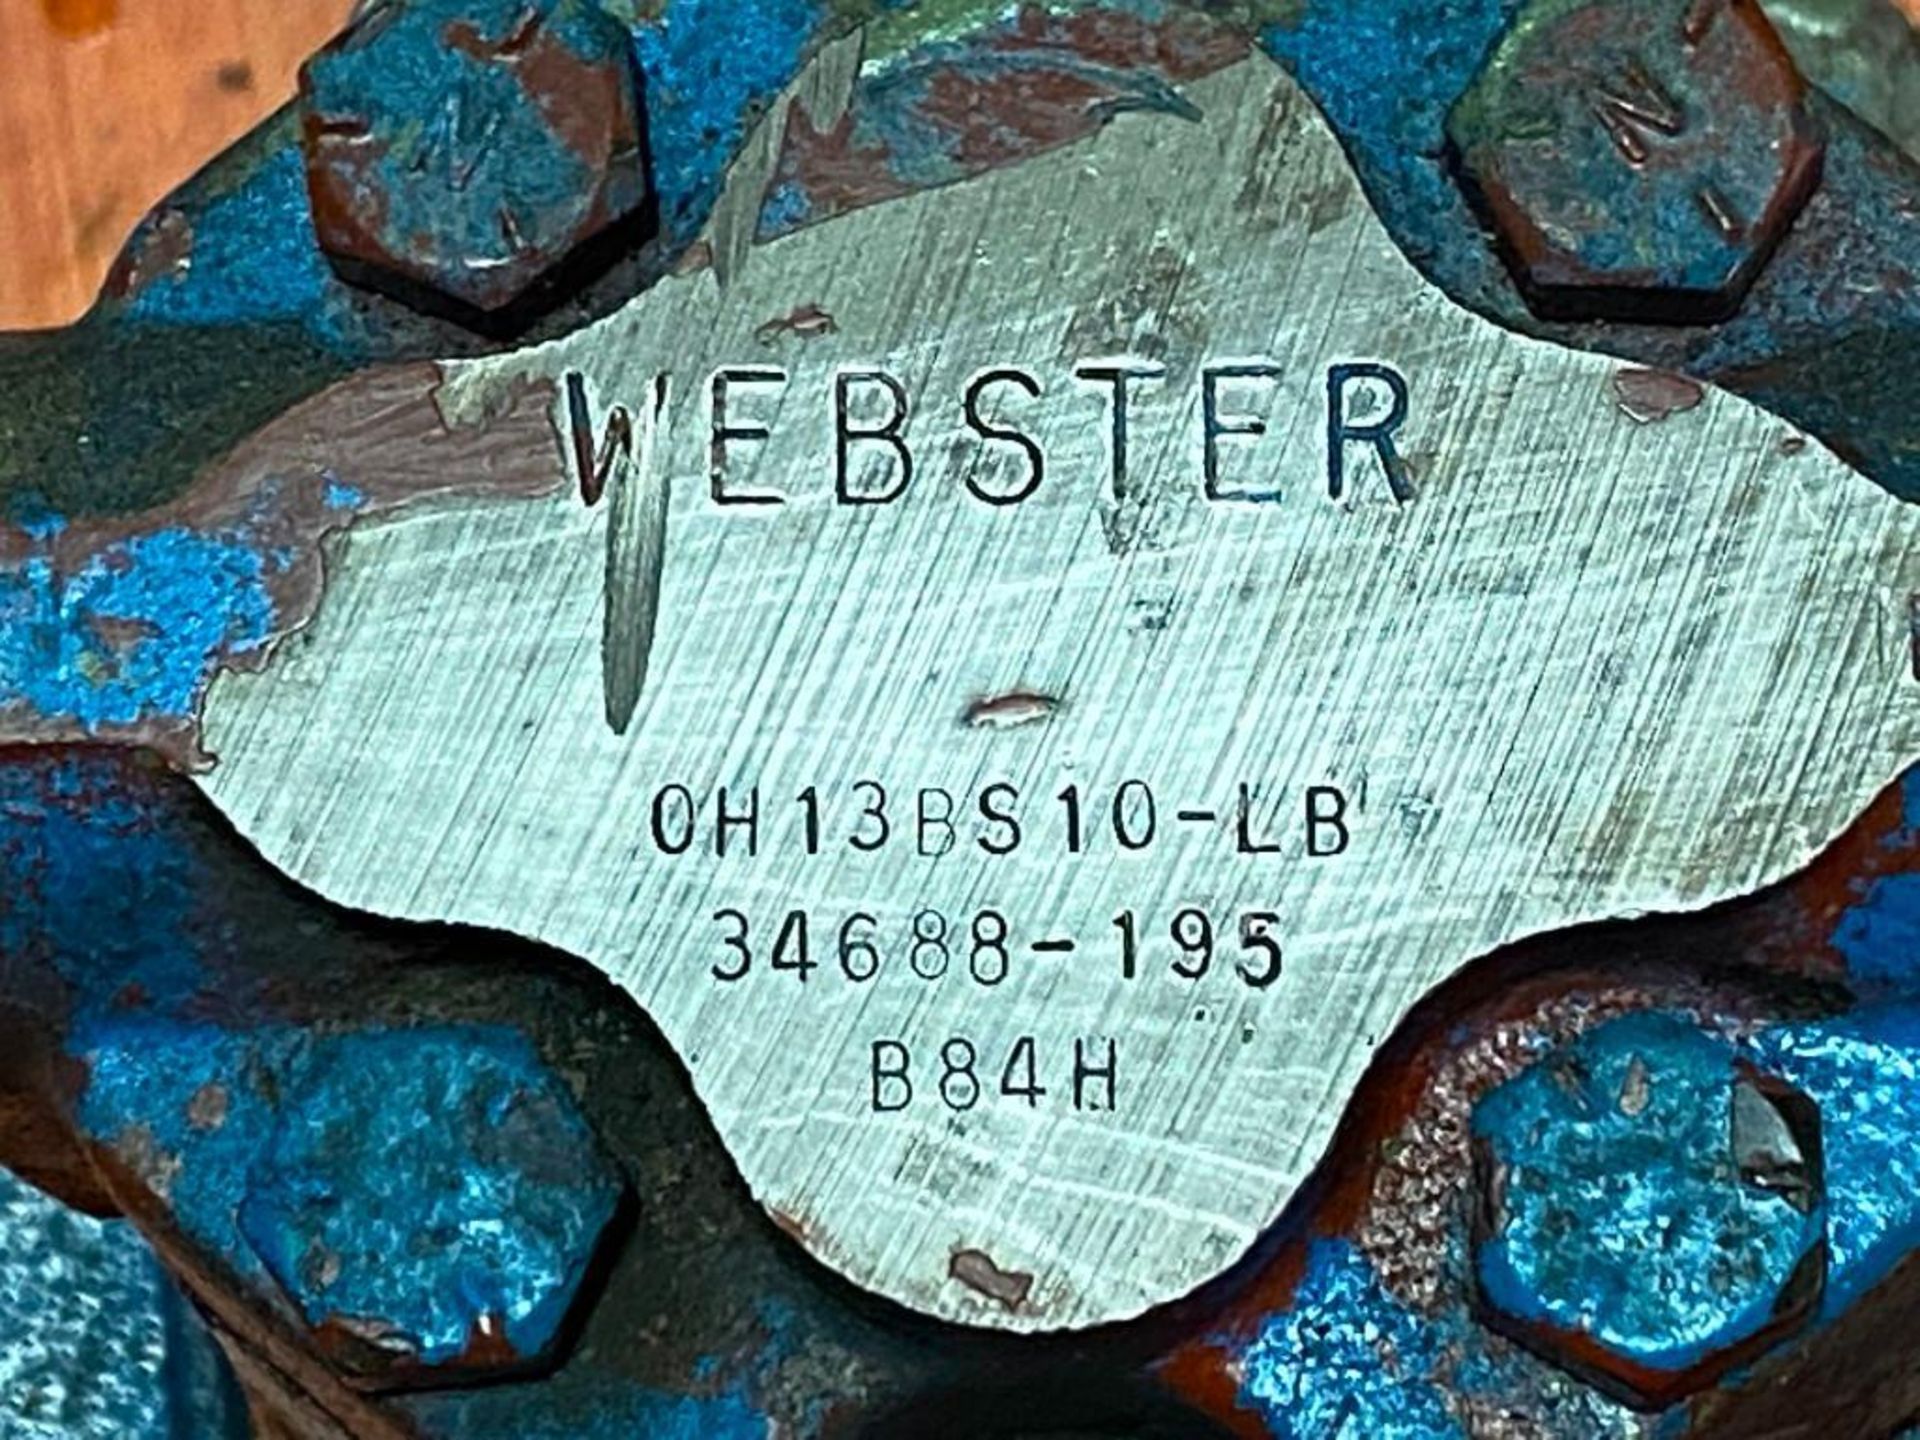 Webster #0H13BS10-LB Pump - Image 3 of 3